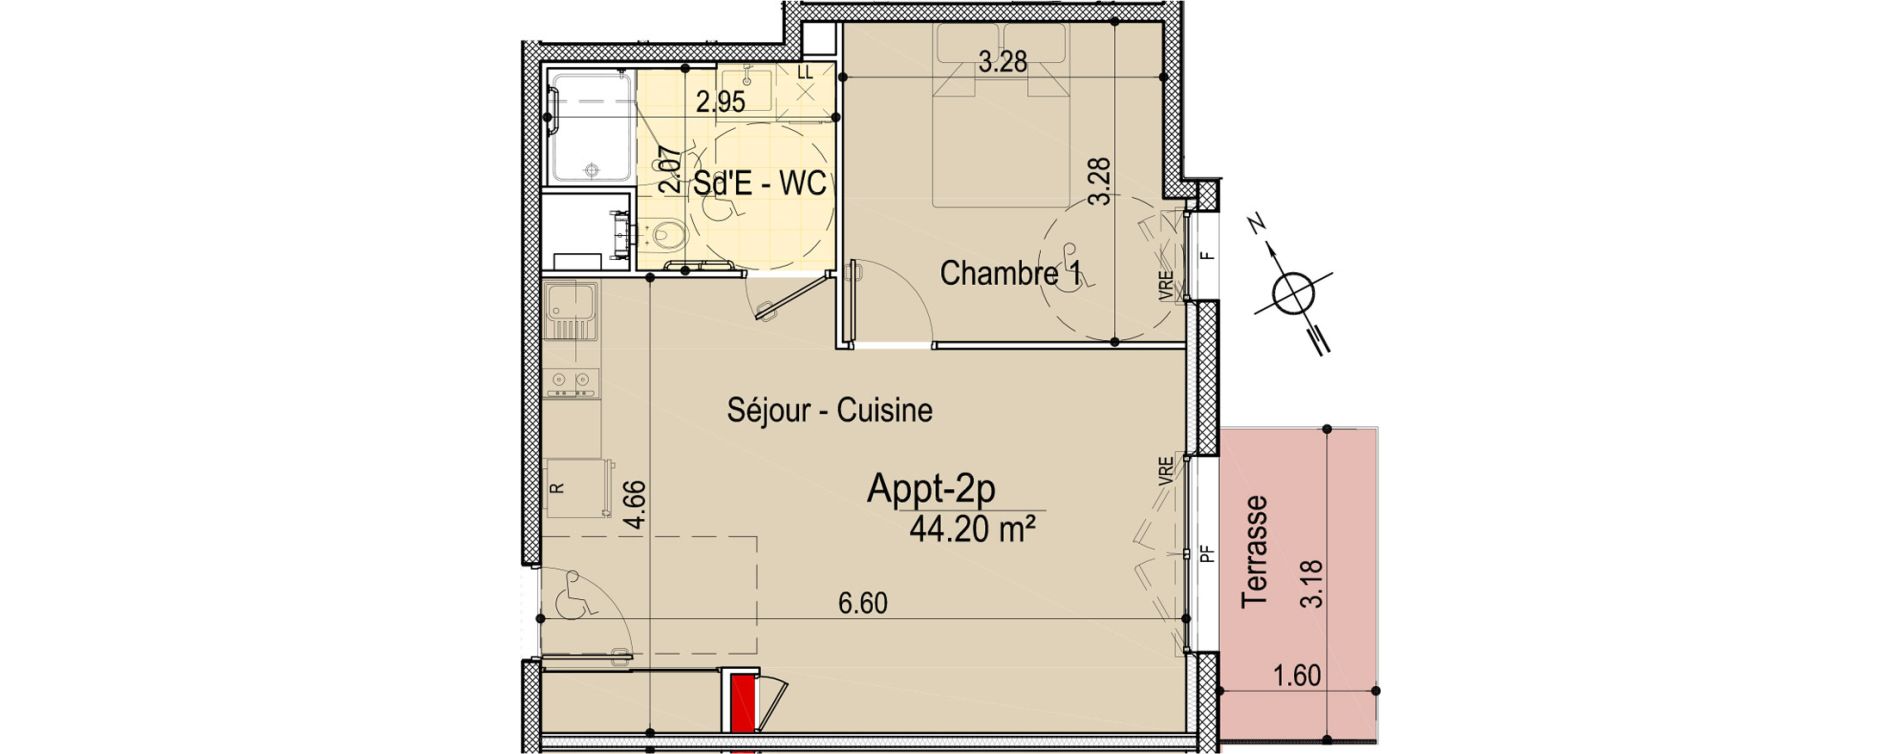 Appartement T2 de 44,20 m2 aux Sables-D'Olonne Le chateau d olonne